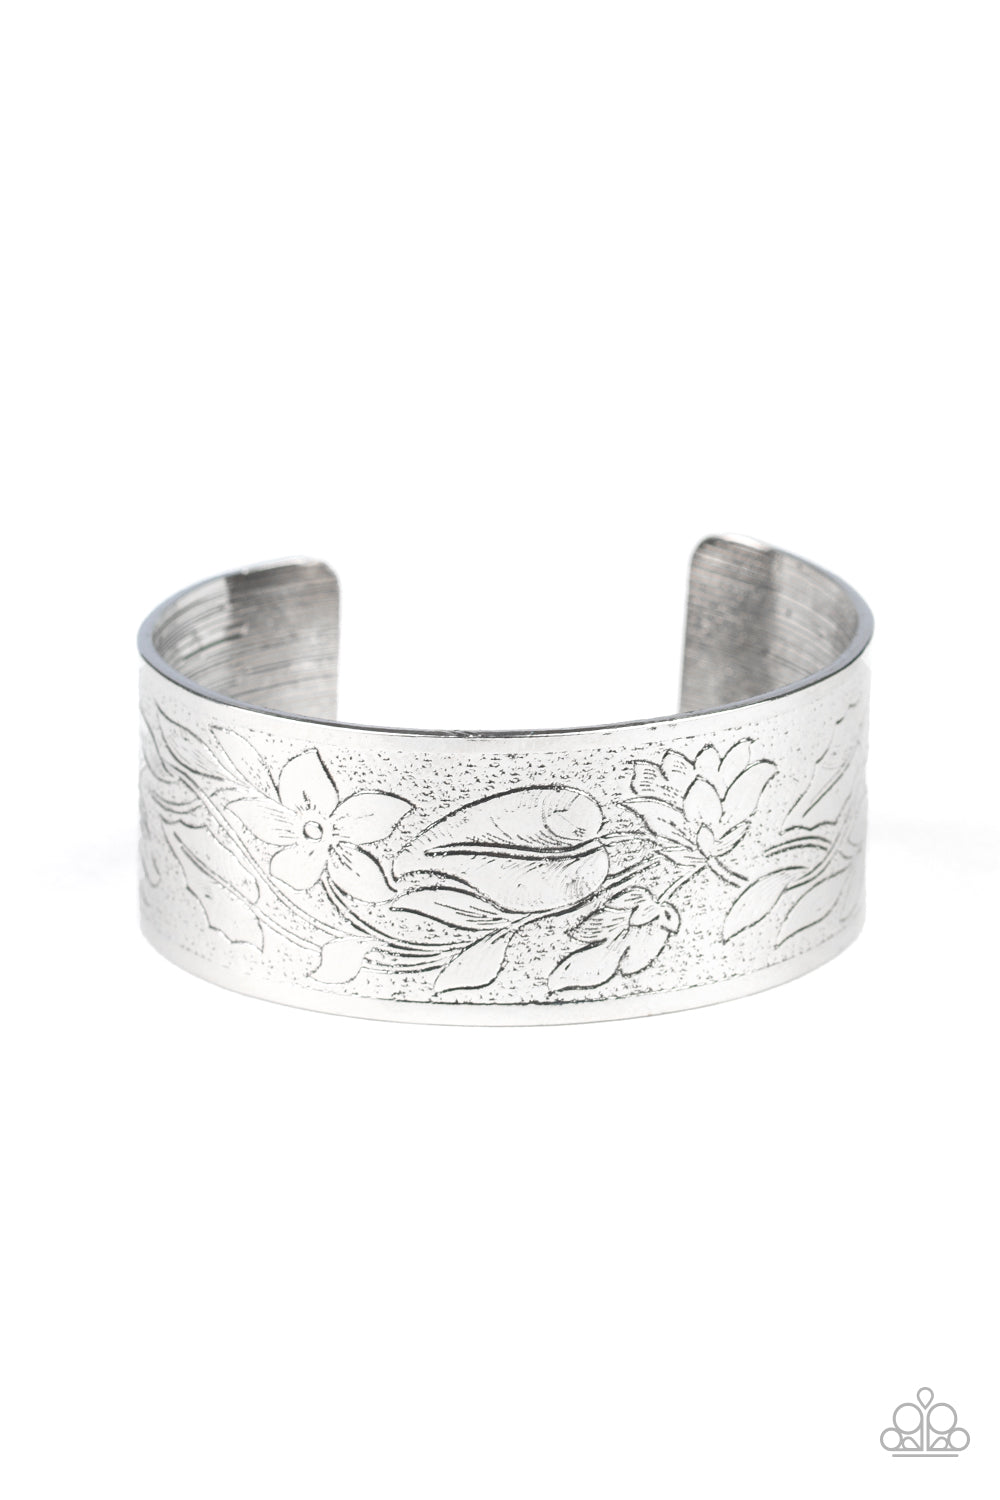 Garden Variety - Silver cuff bracelet